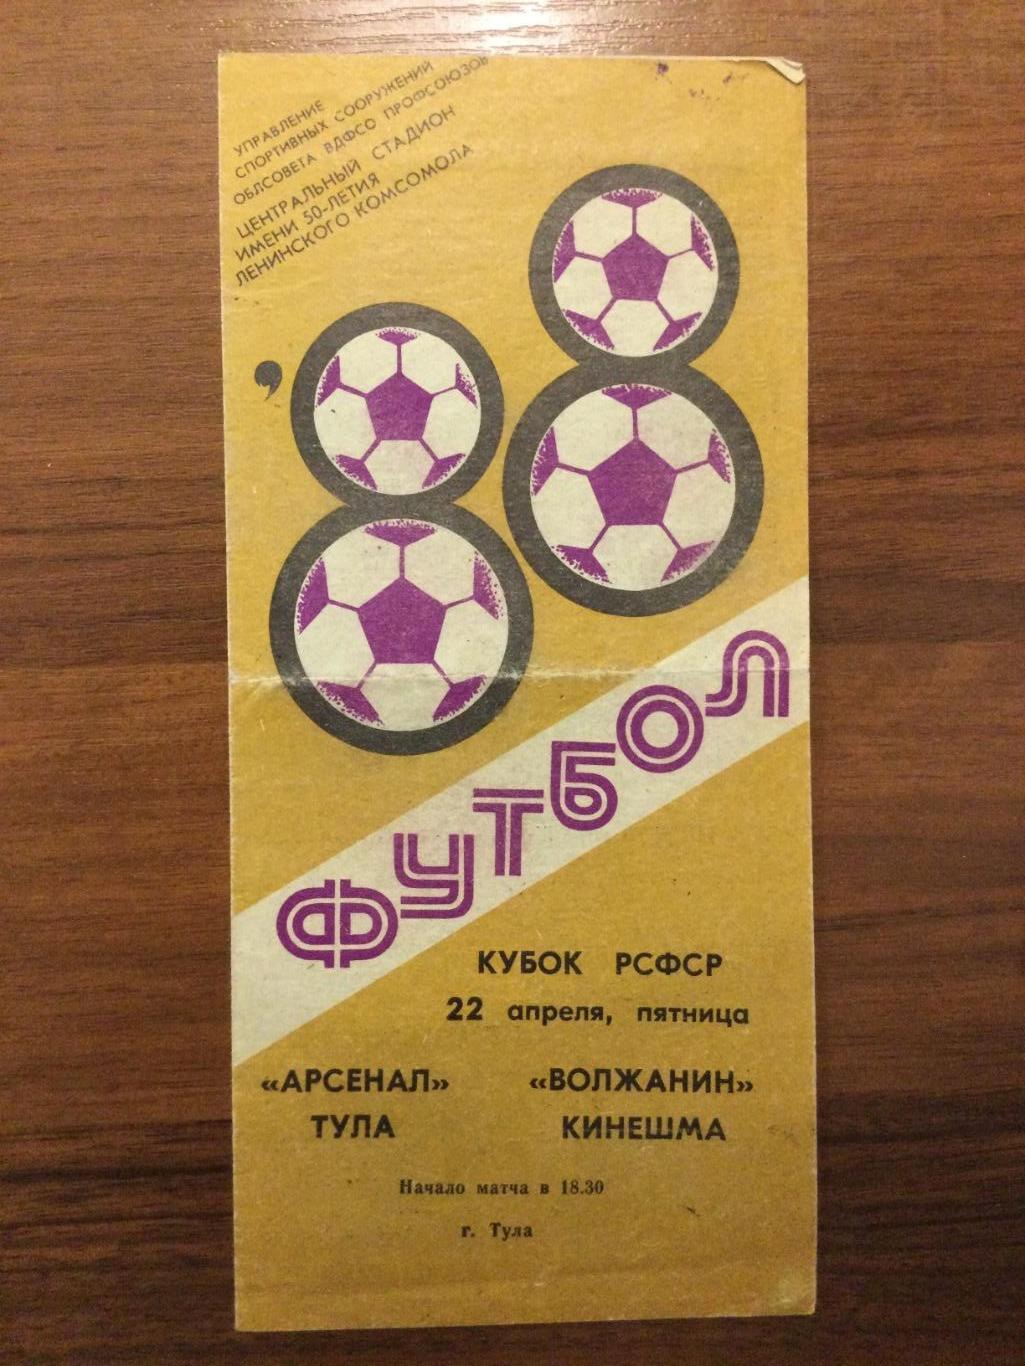 Арсенал Тула - Волжанин Кинешма - 1988 Кубок РСФСР